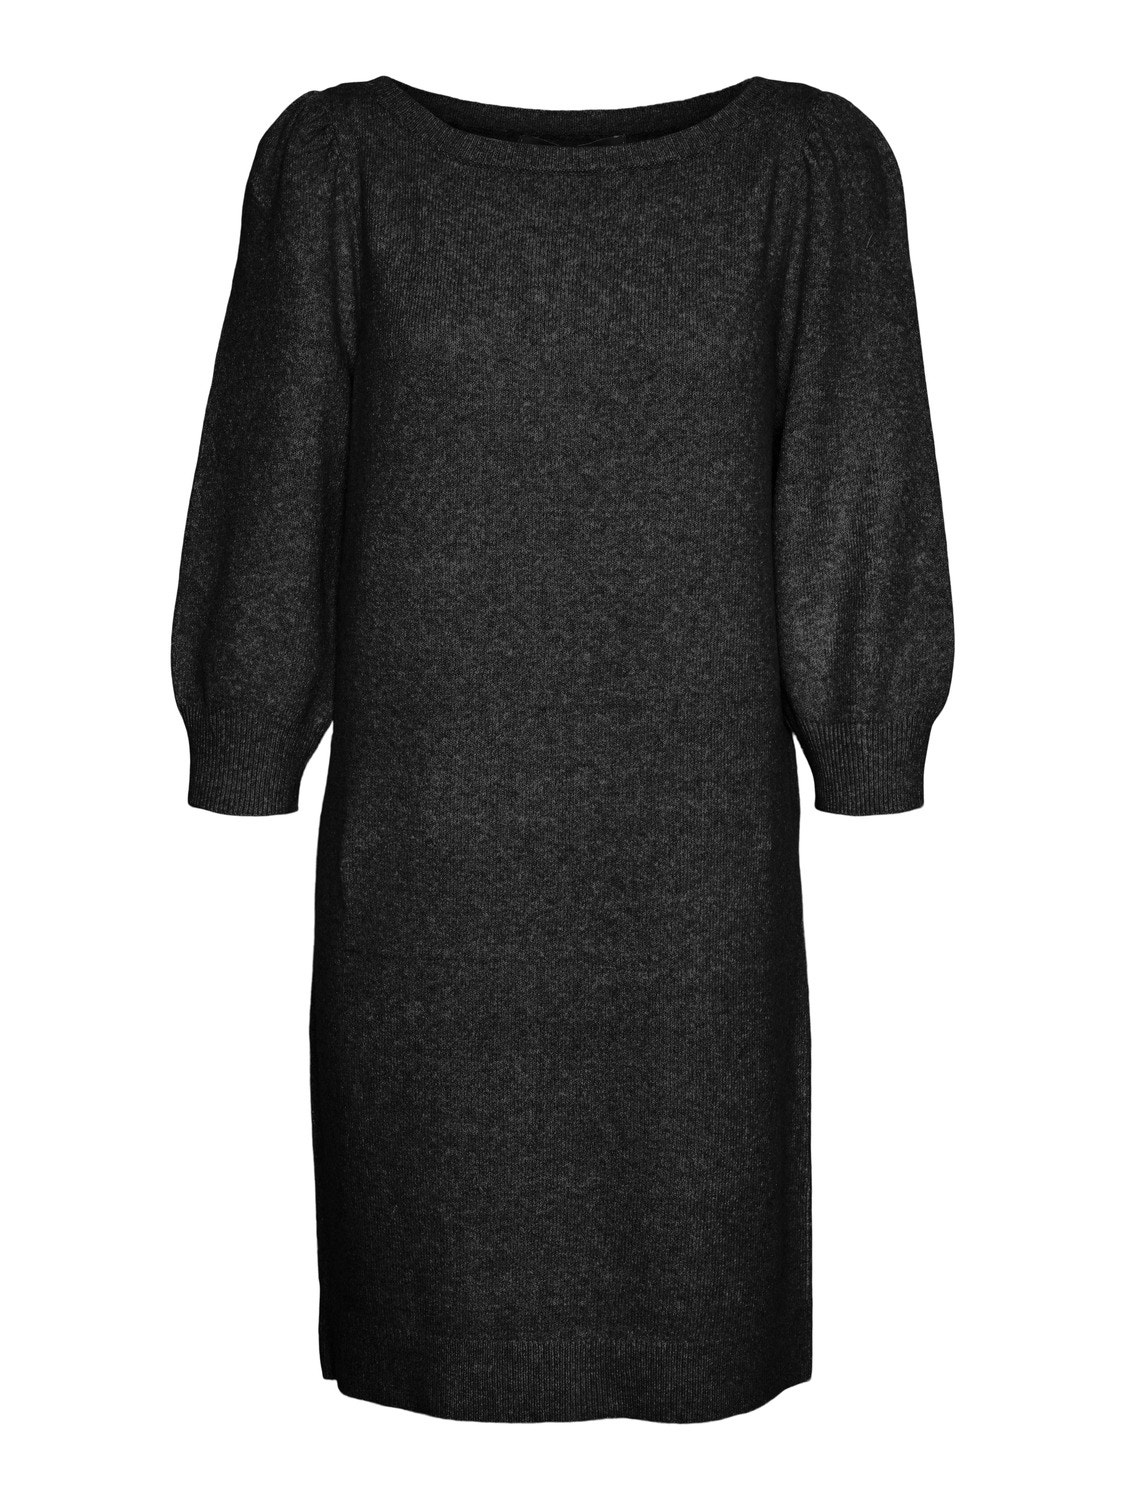 Vero Moda VMDOFFY Short dress -Black - 10268018